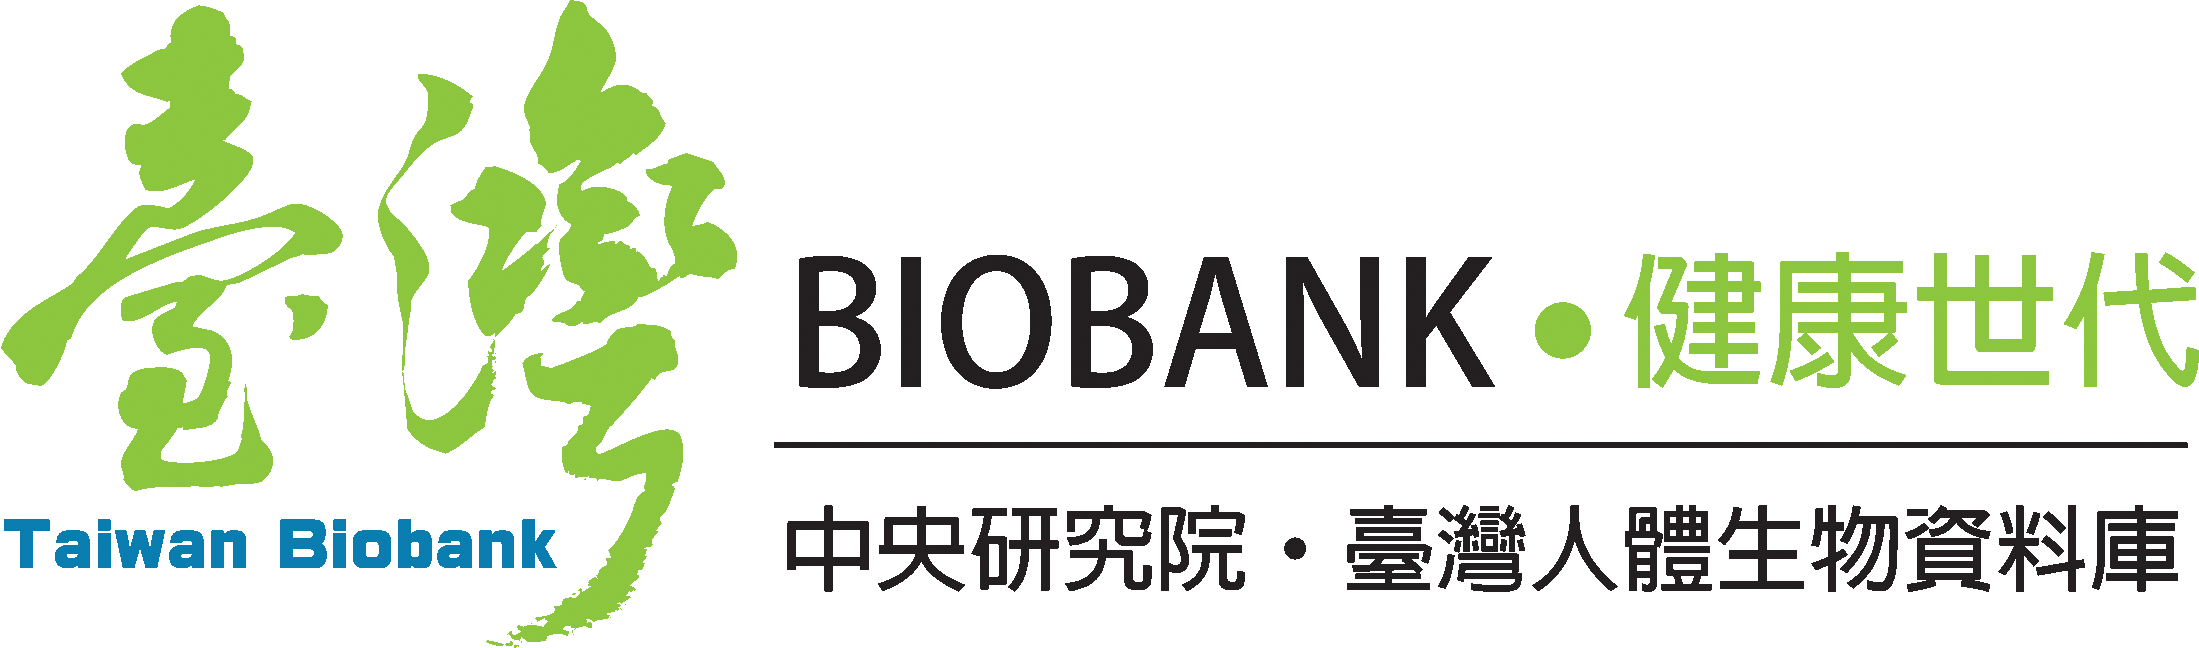 Taiwan_Biobank.gif